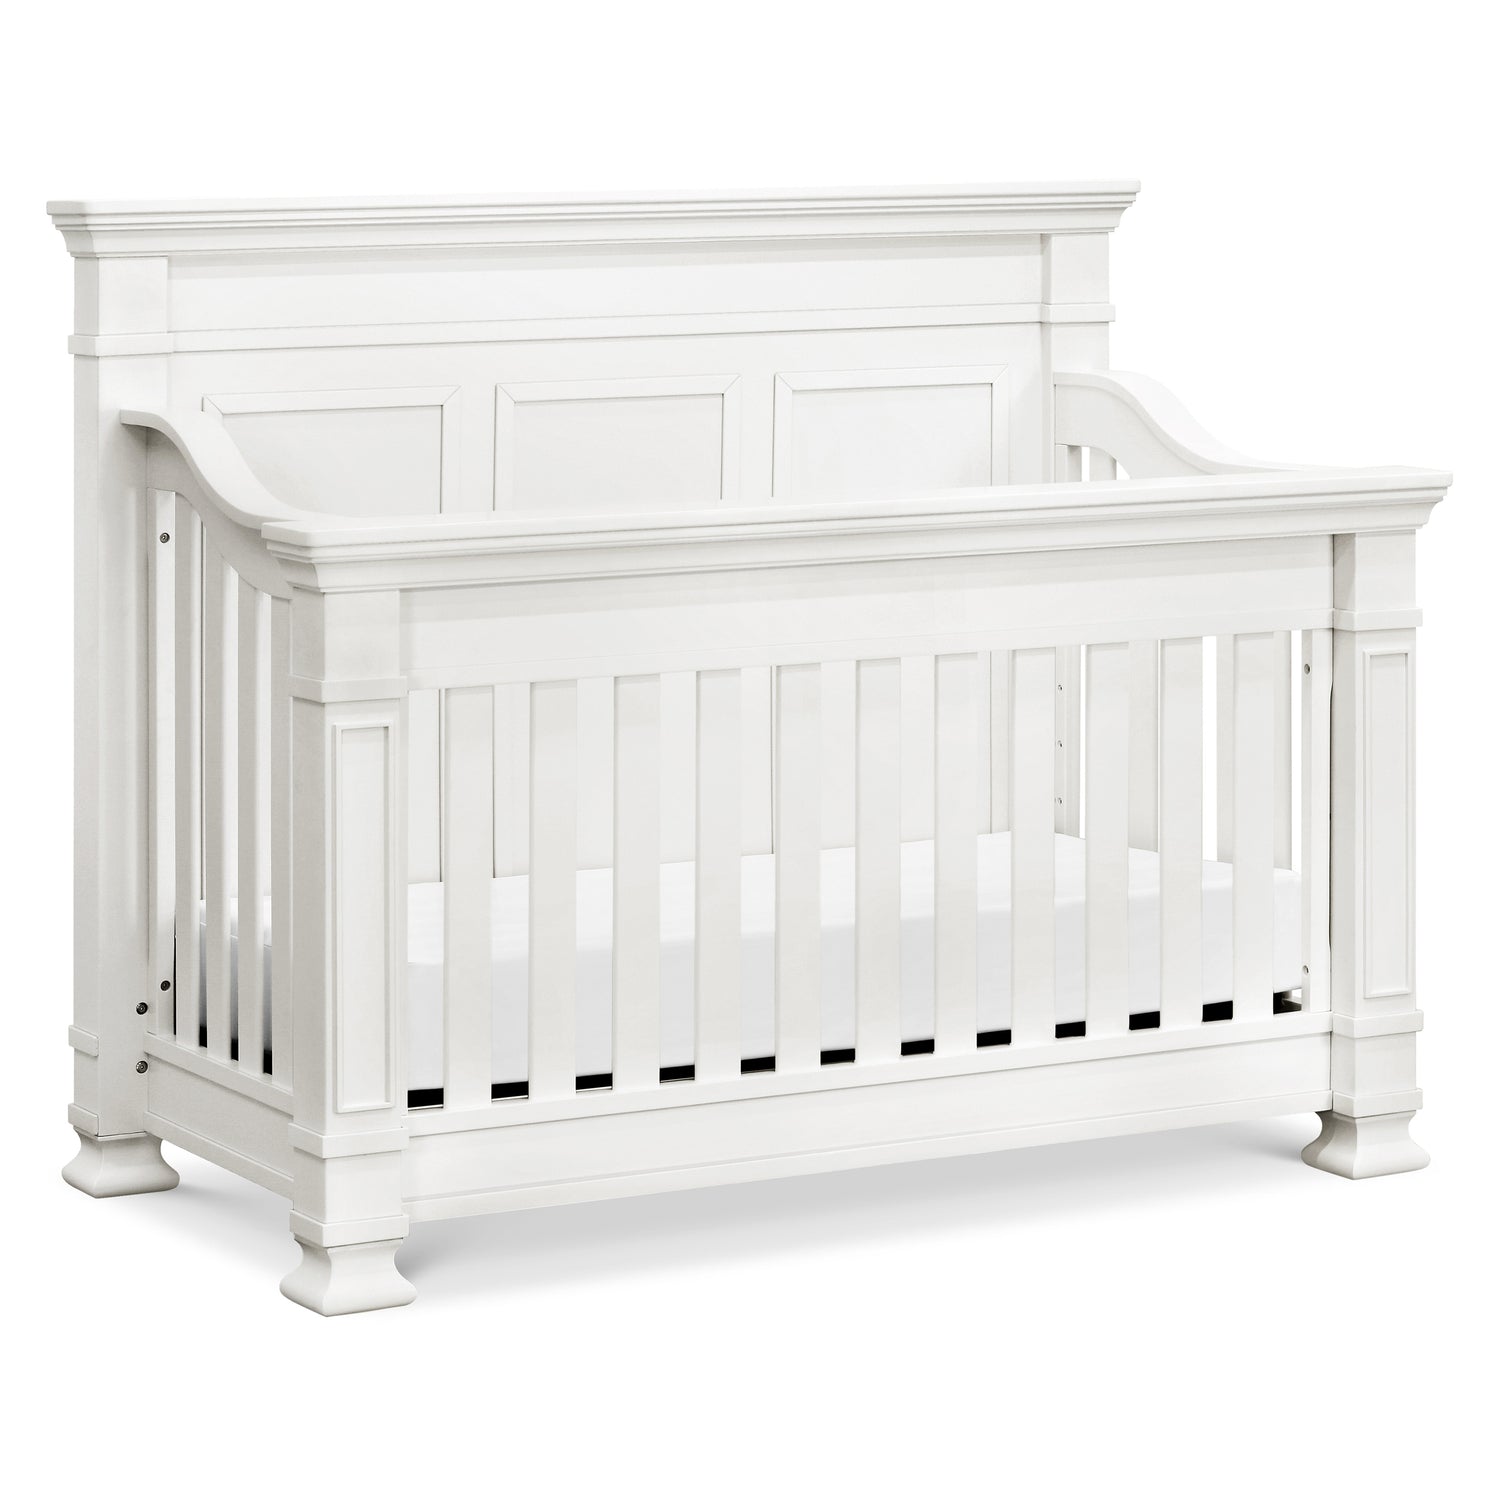 M7601RW,Tillen 4-in-1 Convertible Crib in Warm White